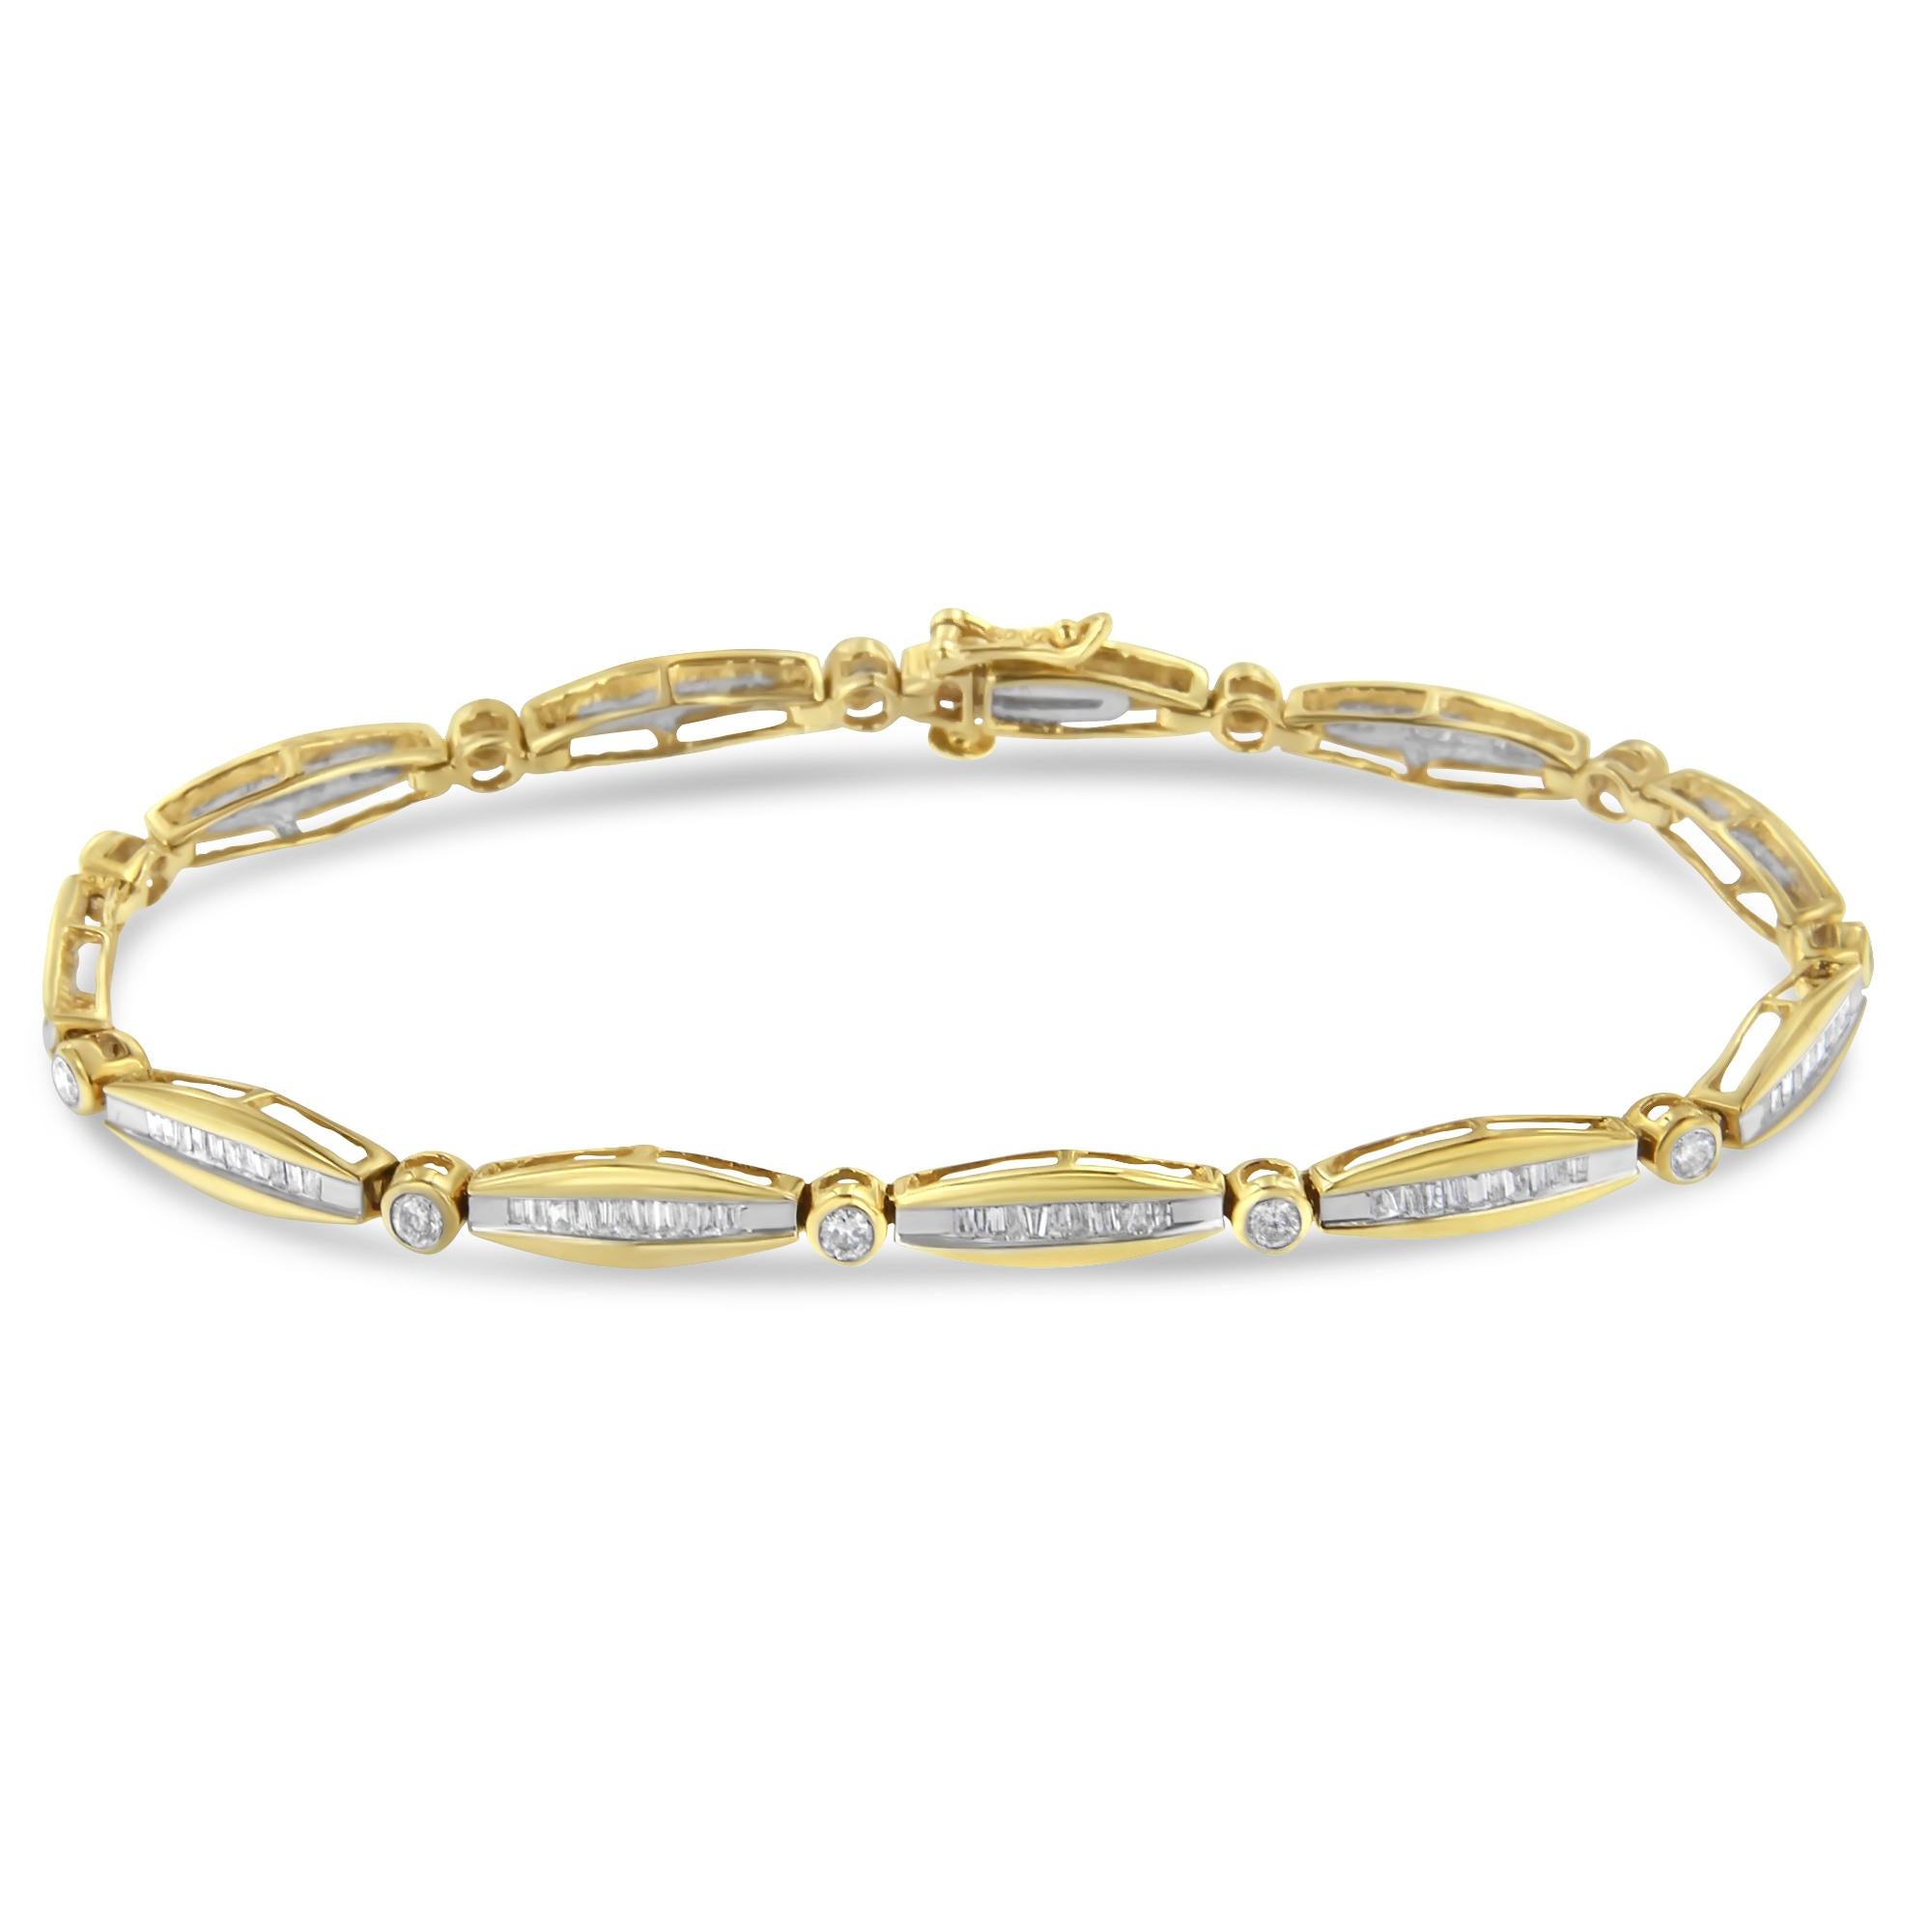 Confectionné en or jaune 14 carats, ce bracelet magnifique et fin scintille avec de longs diamants baguettes incrustés dans des maillons en or, alternant avec des maillons ronds plus petits qui mettent en valeur des diamants étincelants de taille